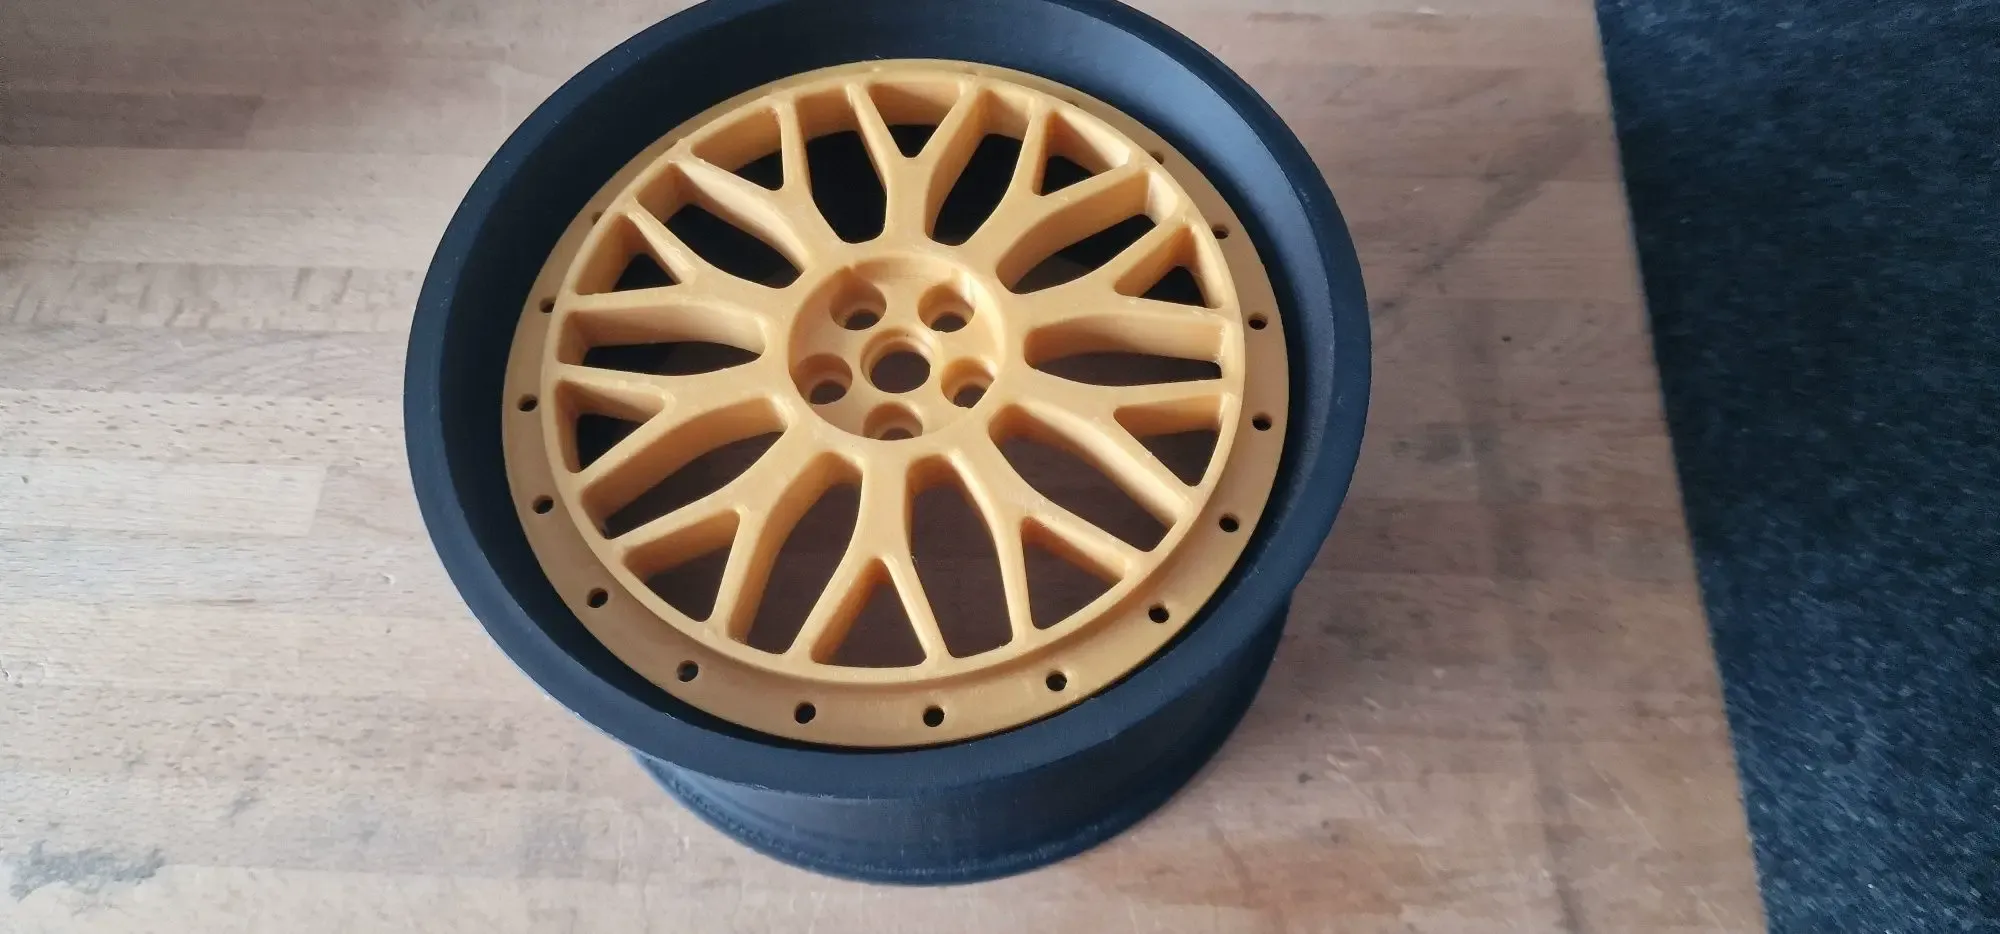 BBS Le Mans Wheel Design Star for 200mm diameter Wheel Kit